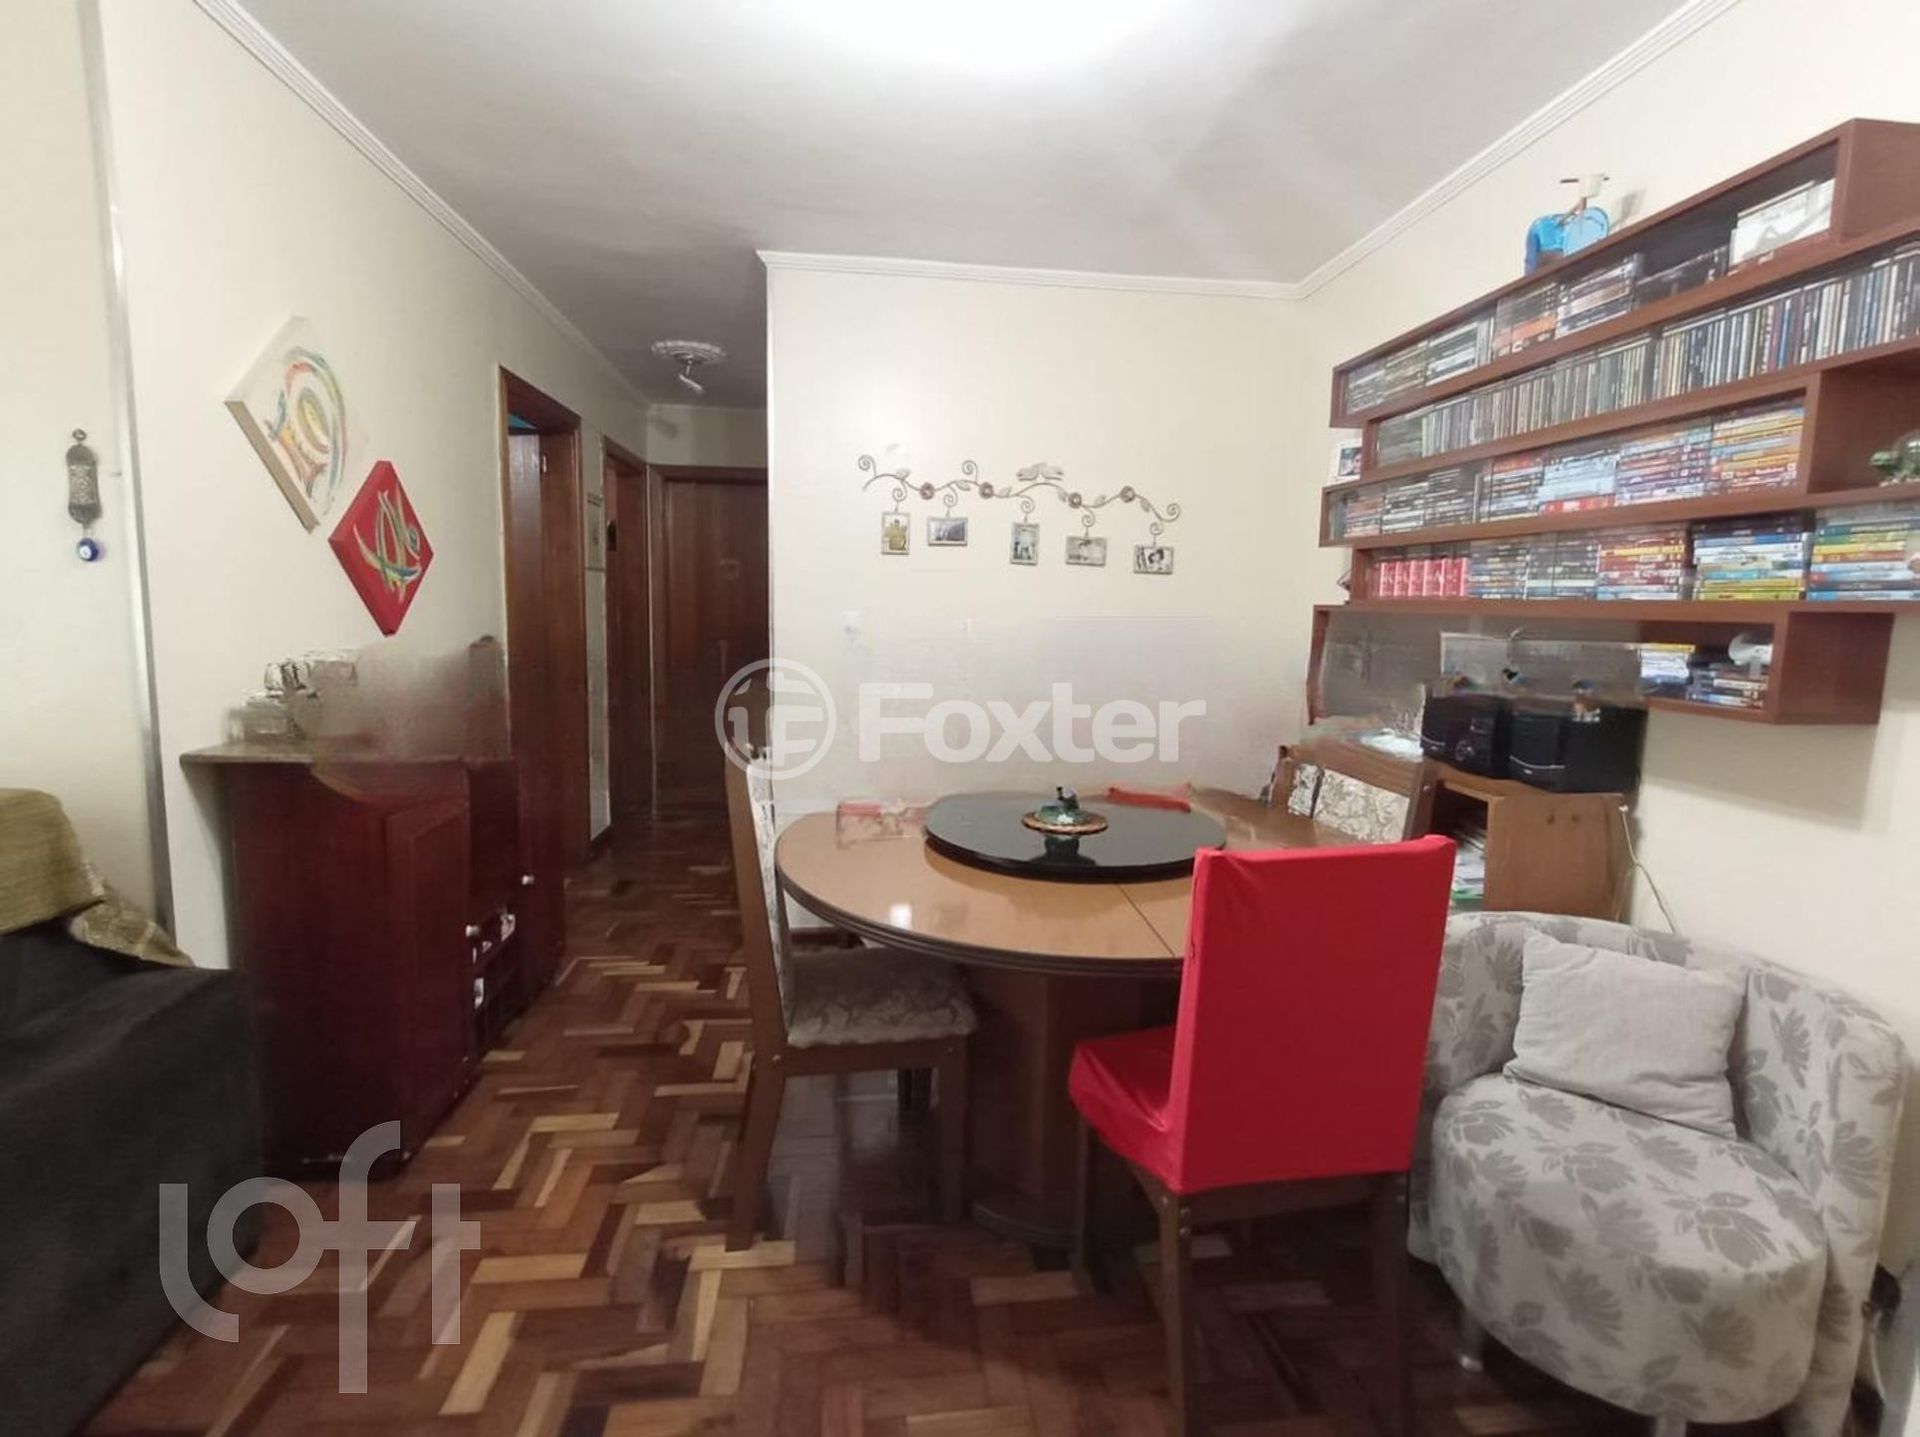 Apartamento 3 dorms à venda Rua Banco da Província, Santa Tereza - Porto Alegre